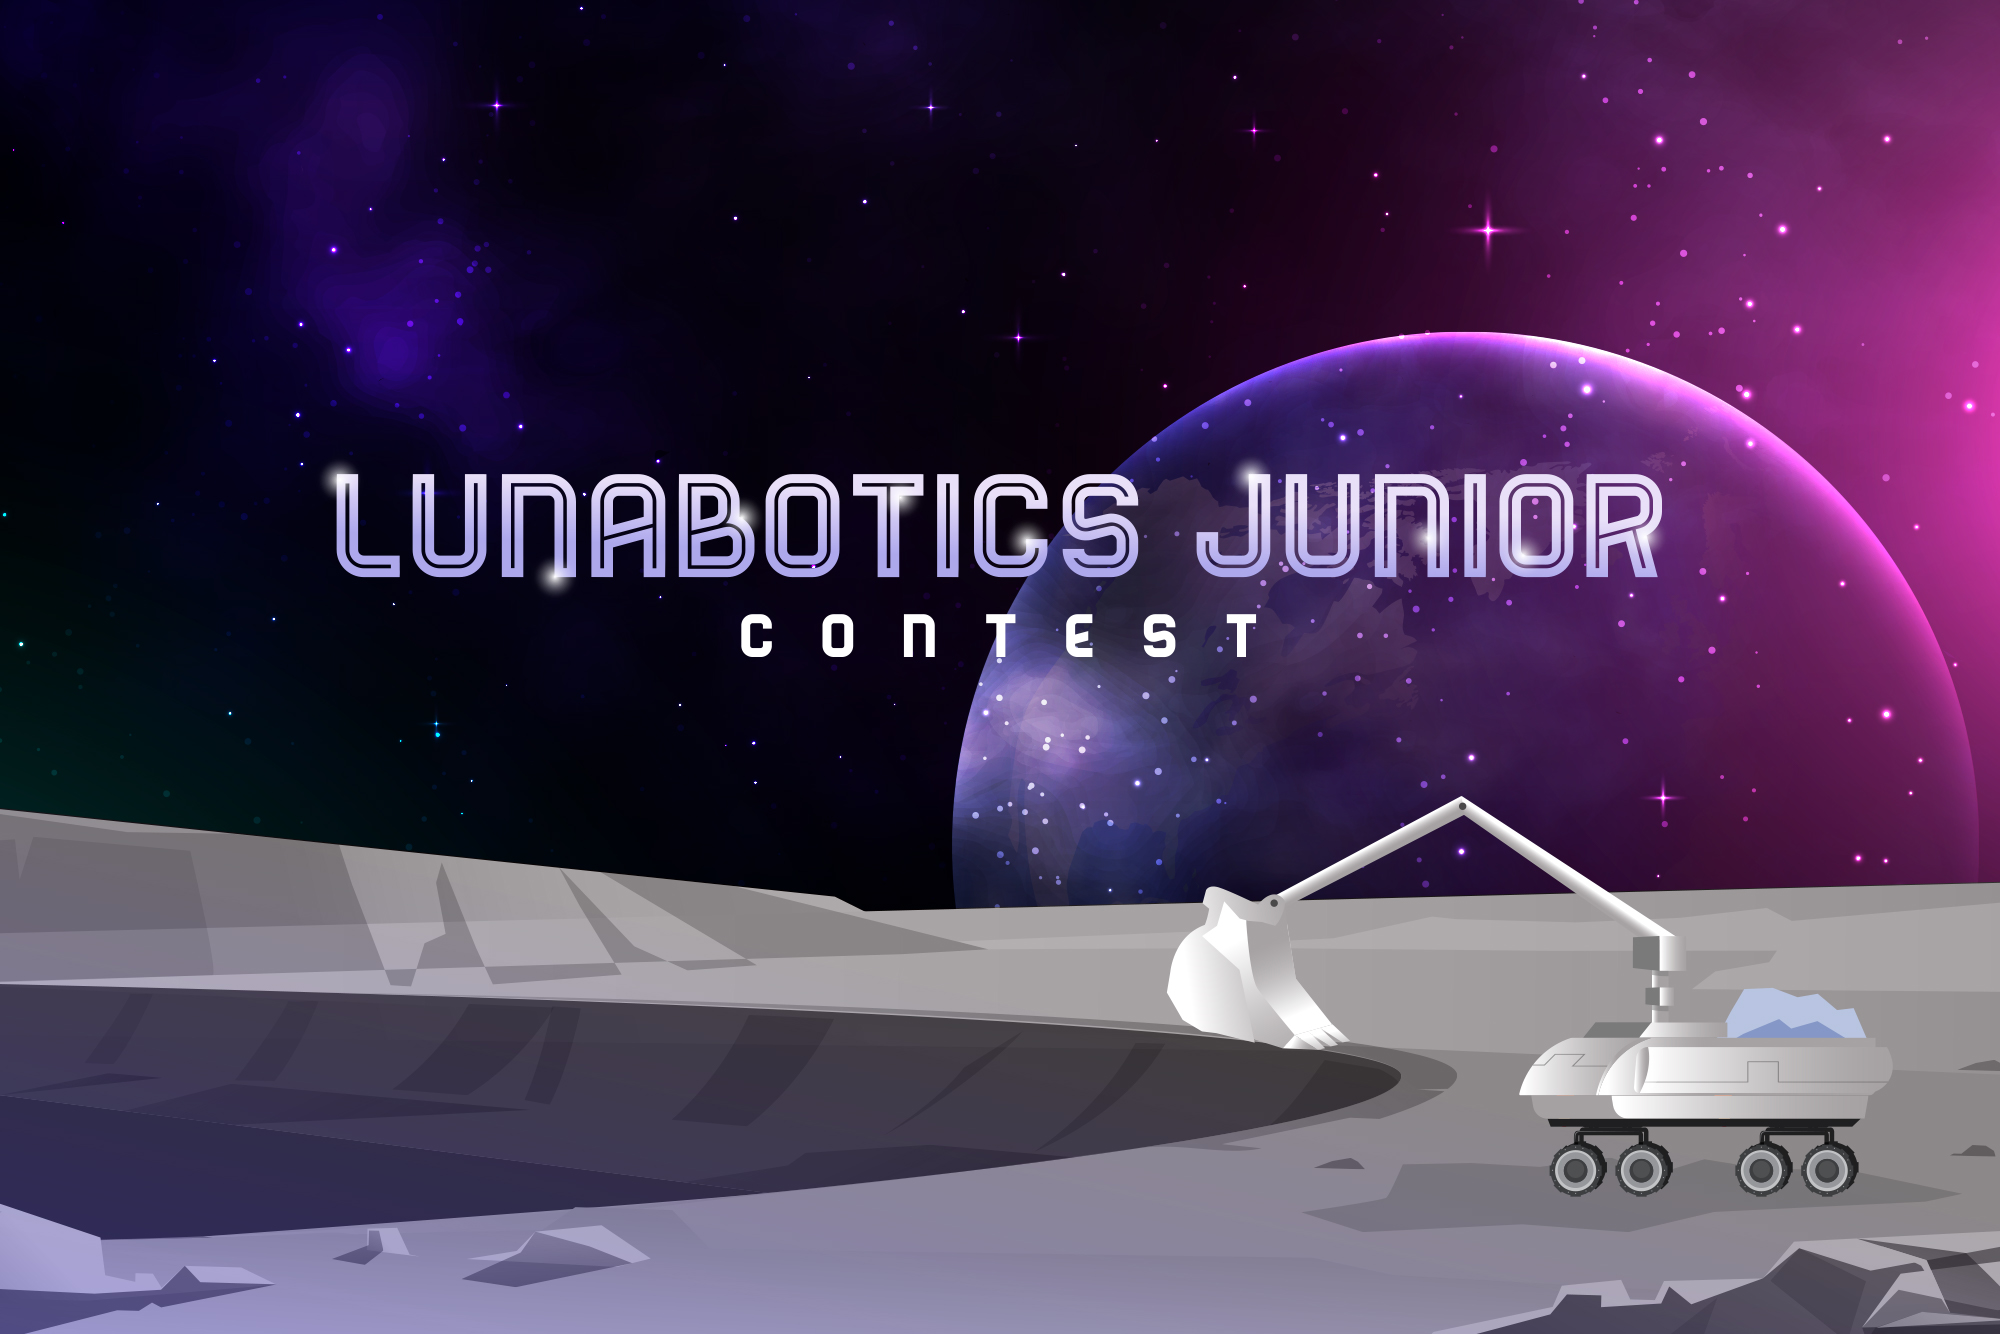  Lunabotics Junior Contest graphic